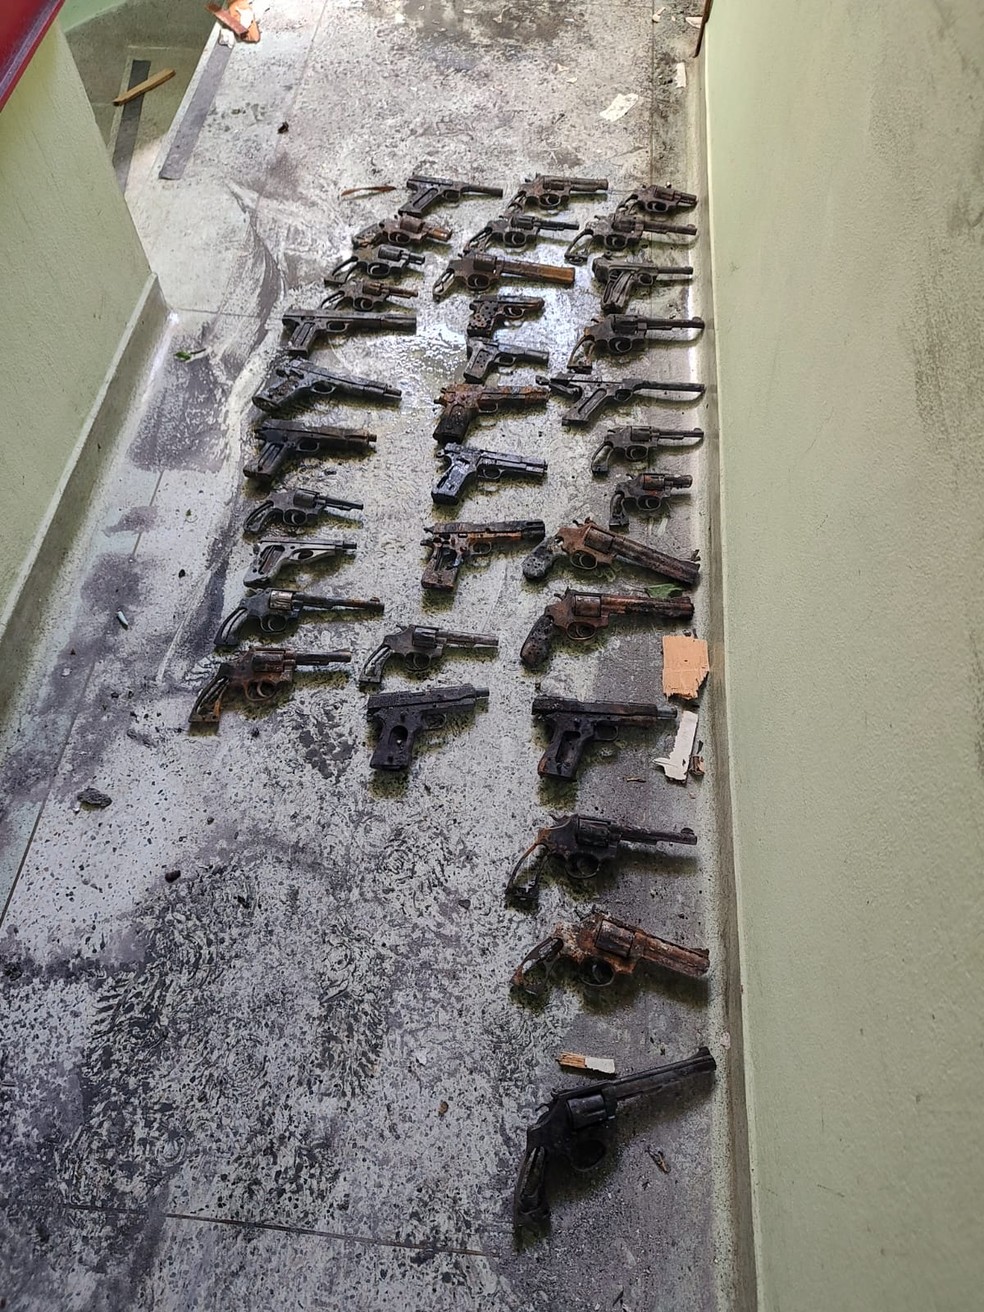 Coronel guardava 60 armas e 3 mil munições em apartamento incendiado em Campinas — Foto: Arquivo pessoal